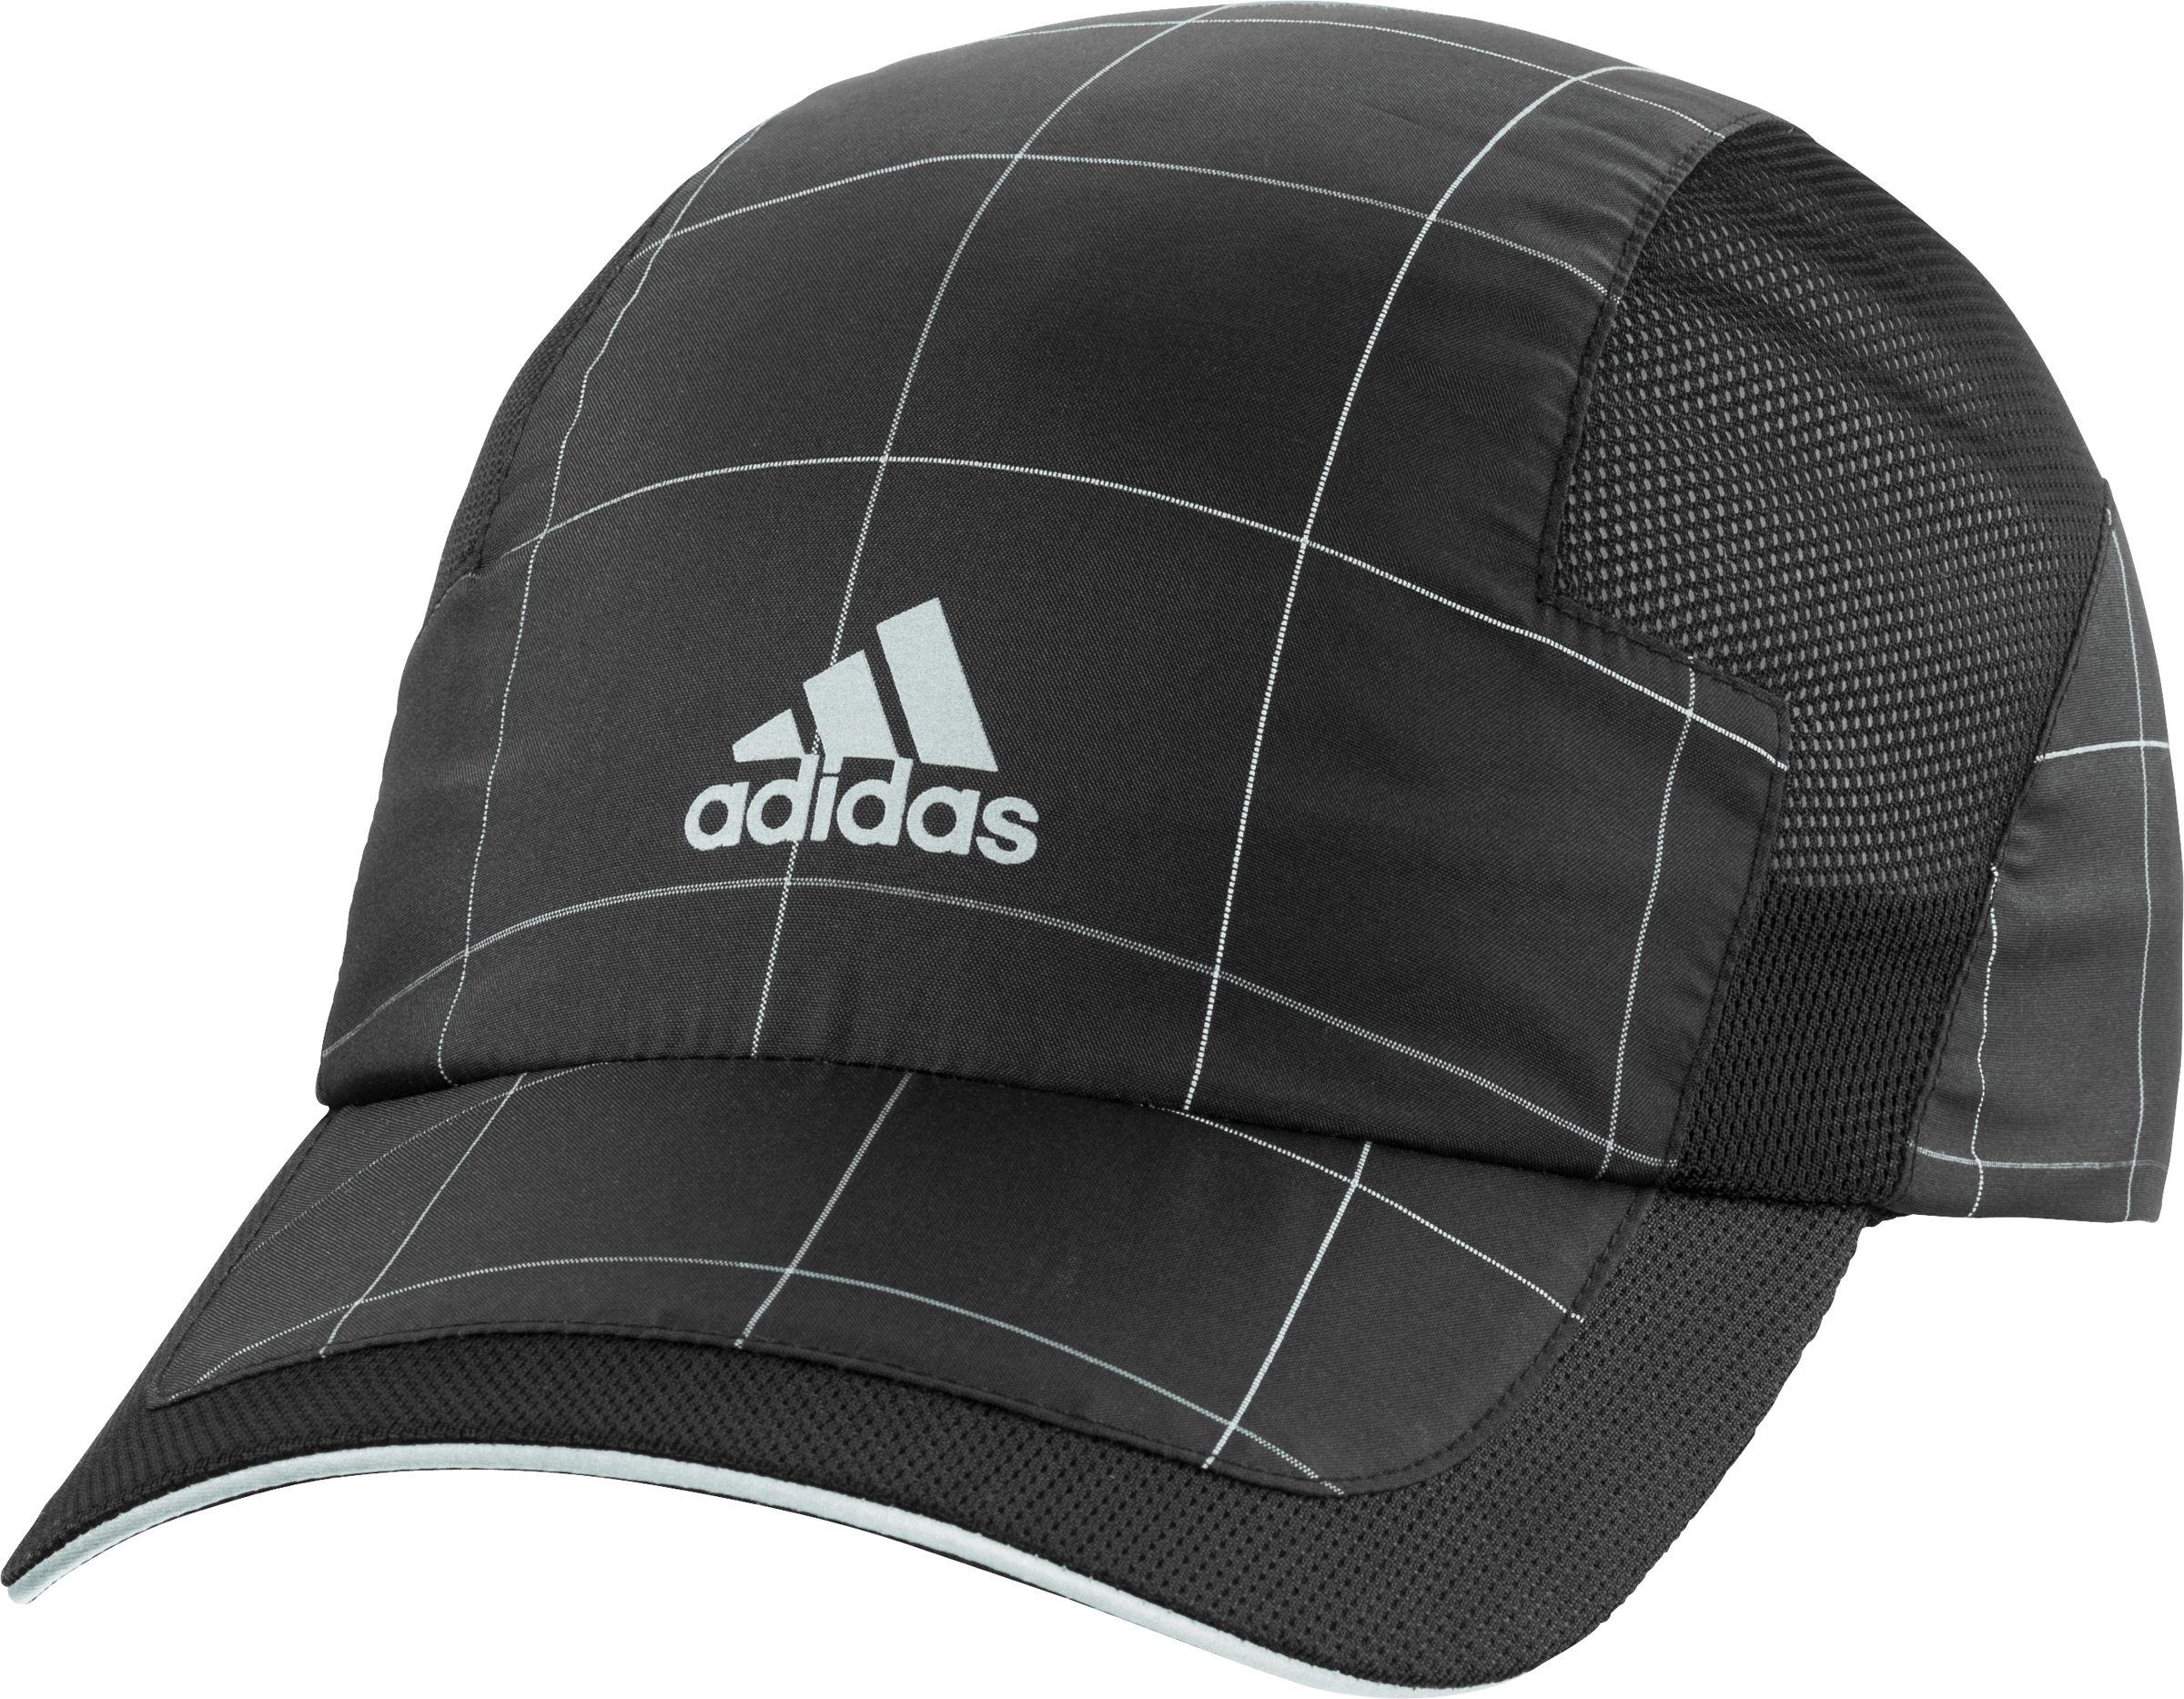 Foto Gorra reflectante Adidas - OI13 - One Size Black/Silver